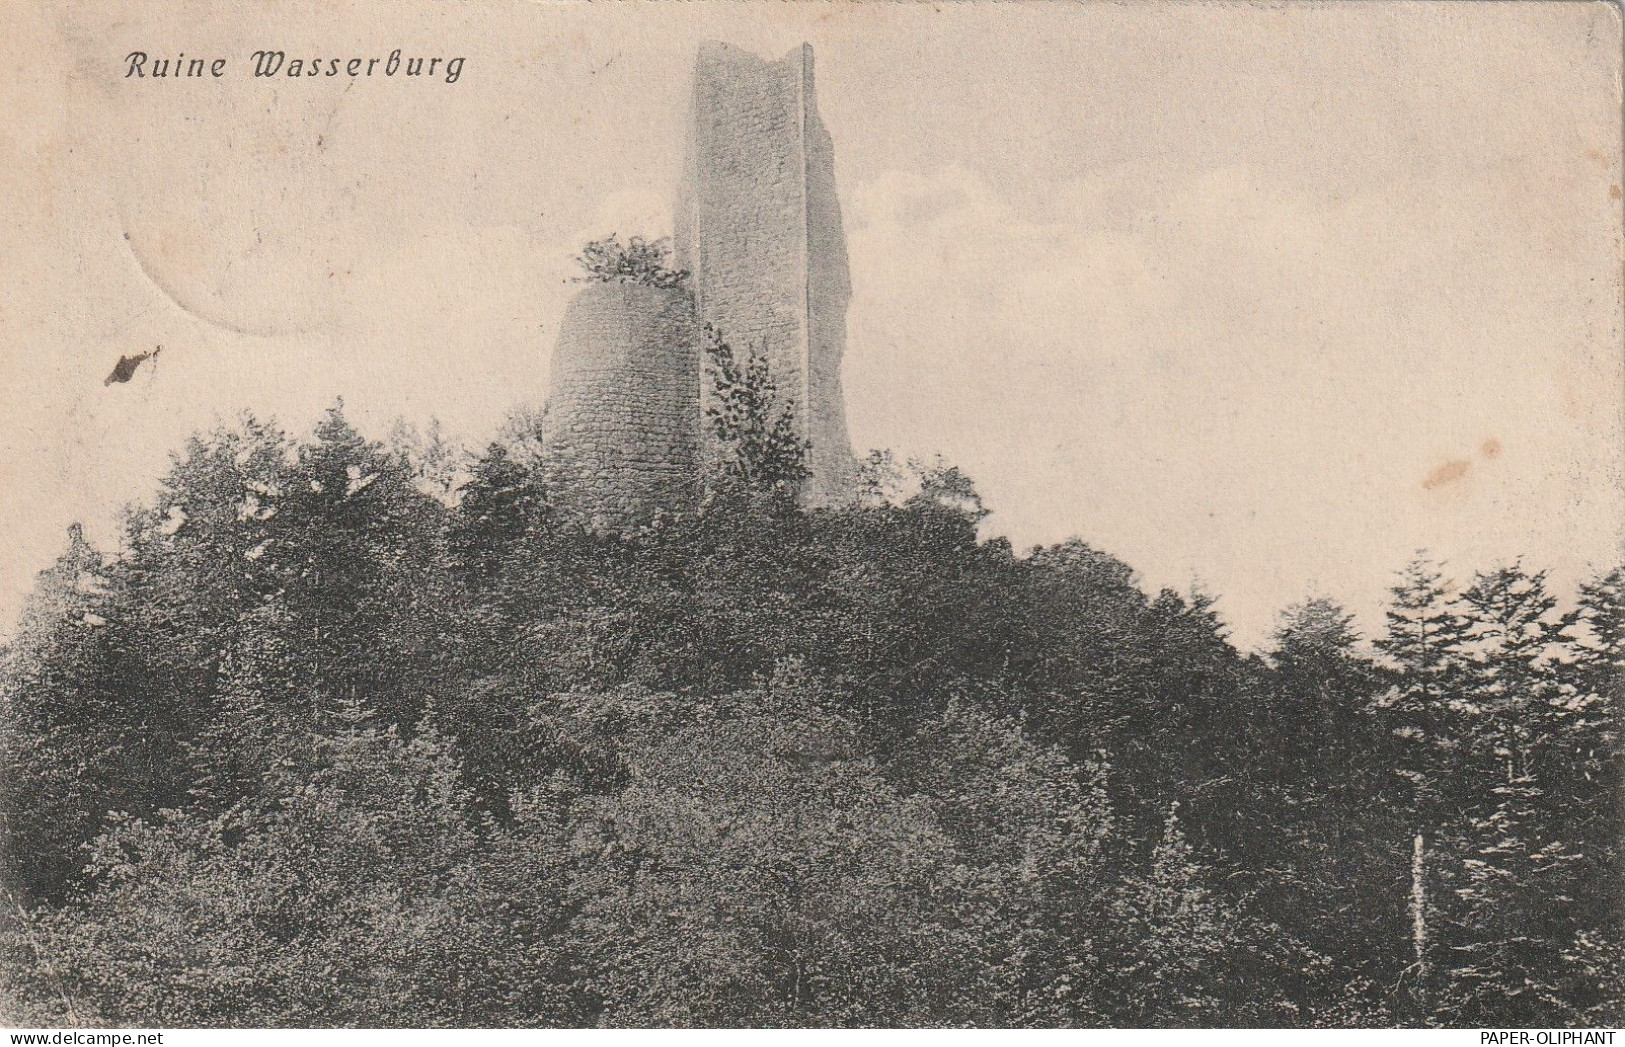 F 68230 SULZBACH / SOULTZBACH-LES-BAINS, Ruine Wasserburg,  Verlag Luib-Strassburg - Wintzenheim